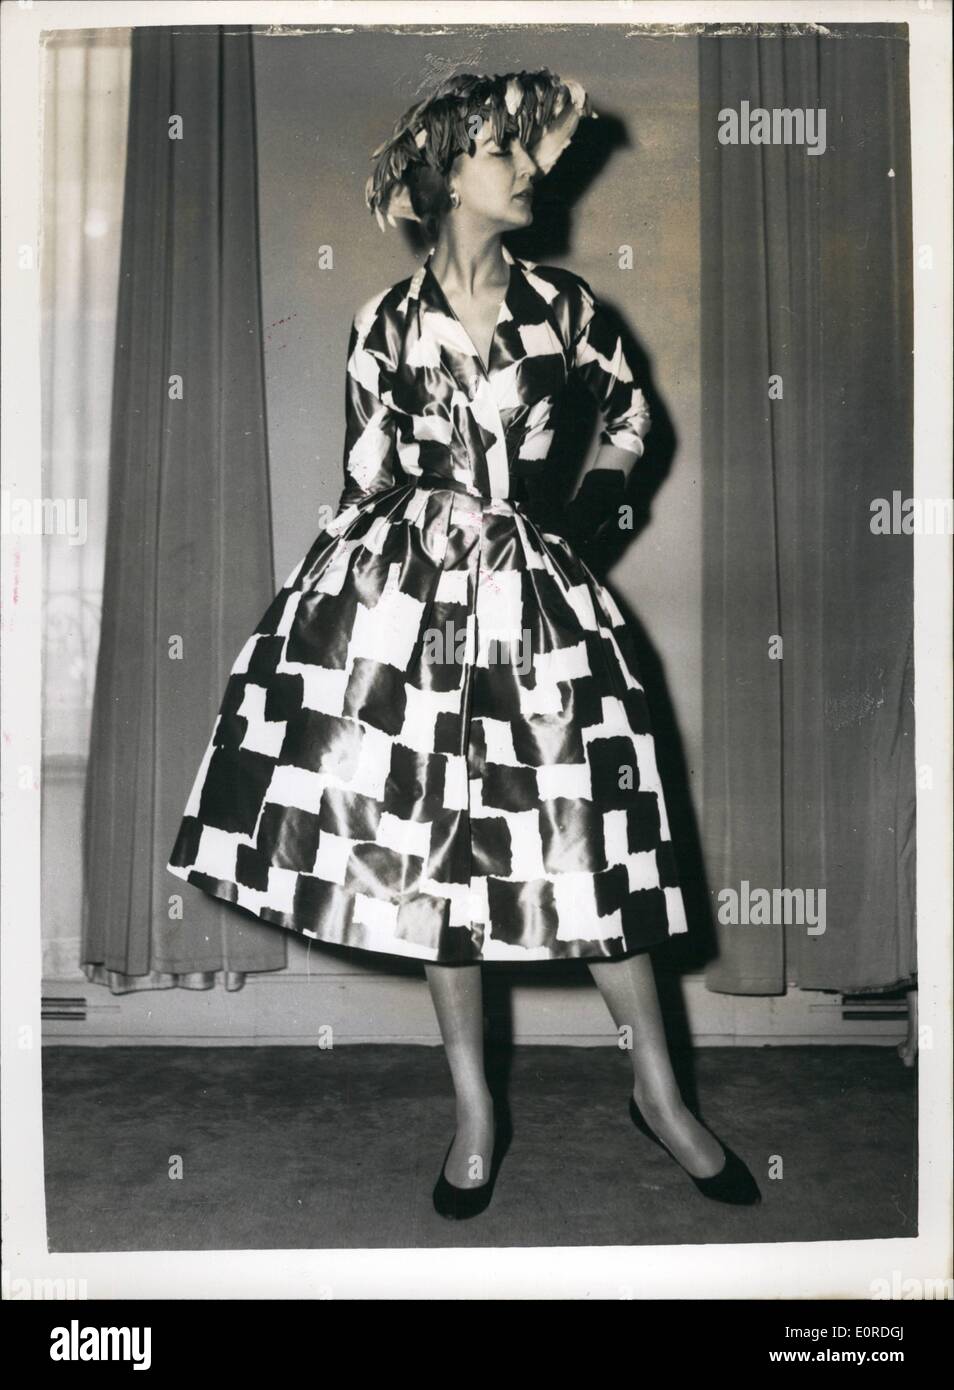 2. Februar 1959 - neue Styles von der Norman Hartnell Sammlung am Nachmittag Taftkleid. Foto zeigt Scheck im Voraus ist die Bezeichnung für diesen Nachmittag Kleid in Schenje Taffets in kühne Entwürfe der dunklen grauen und weißen Kontrollen. Dies ist aus der neuen Norman Hartnell Kollektion in London gezeigt. Stockfoto